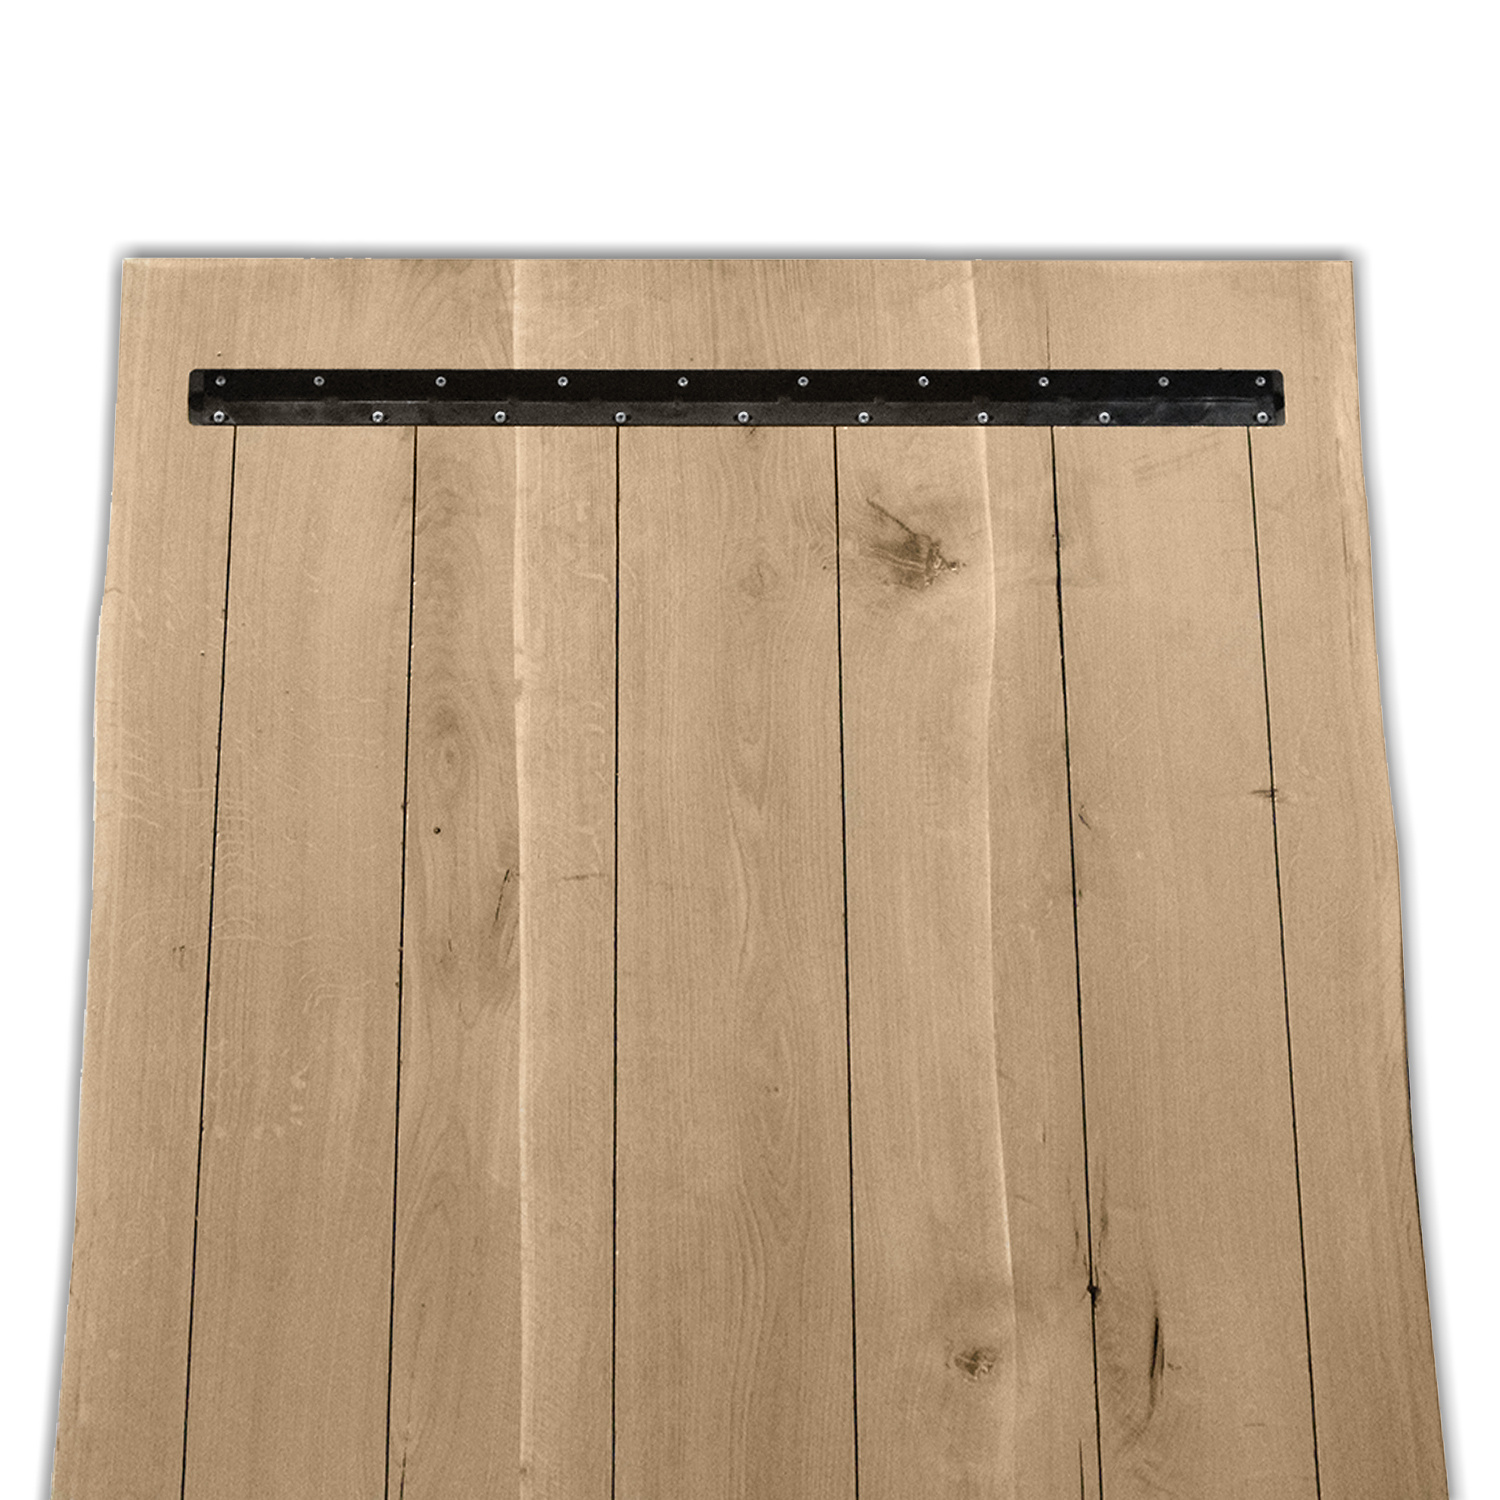  Eiken boomstam(rand) tafelblad LUXE - 4 cm dik (1-laag) - diverse afmetingen - optioneel geborsteld - Extra rustiek Europees eikenhout met schorsrand / waankant - verlijmd kd 10-12%